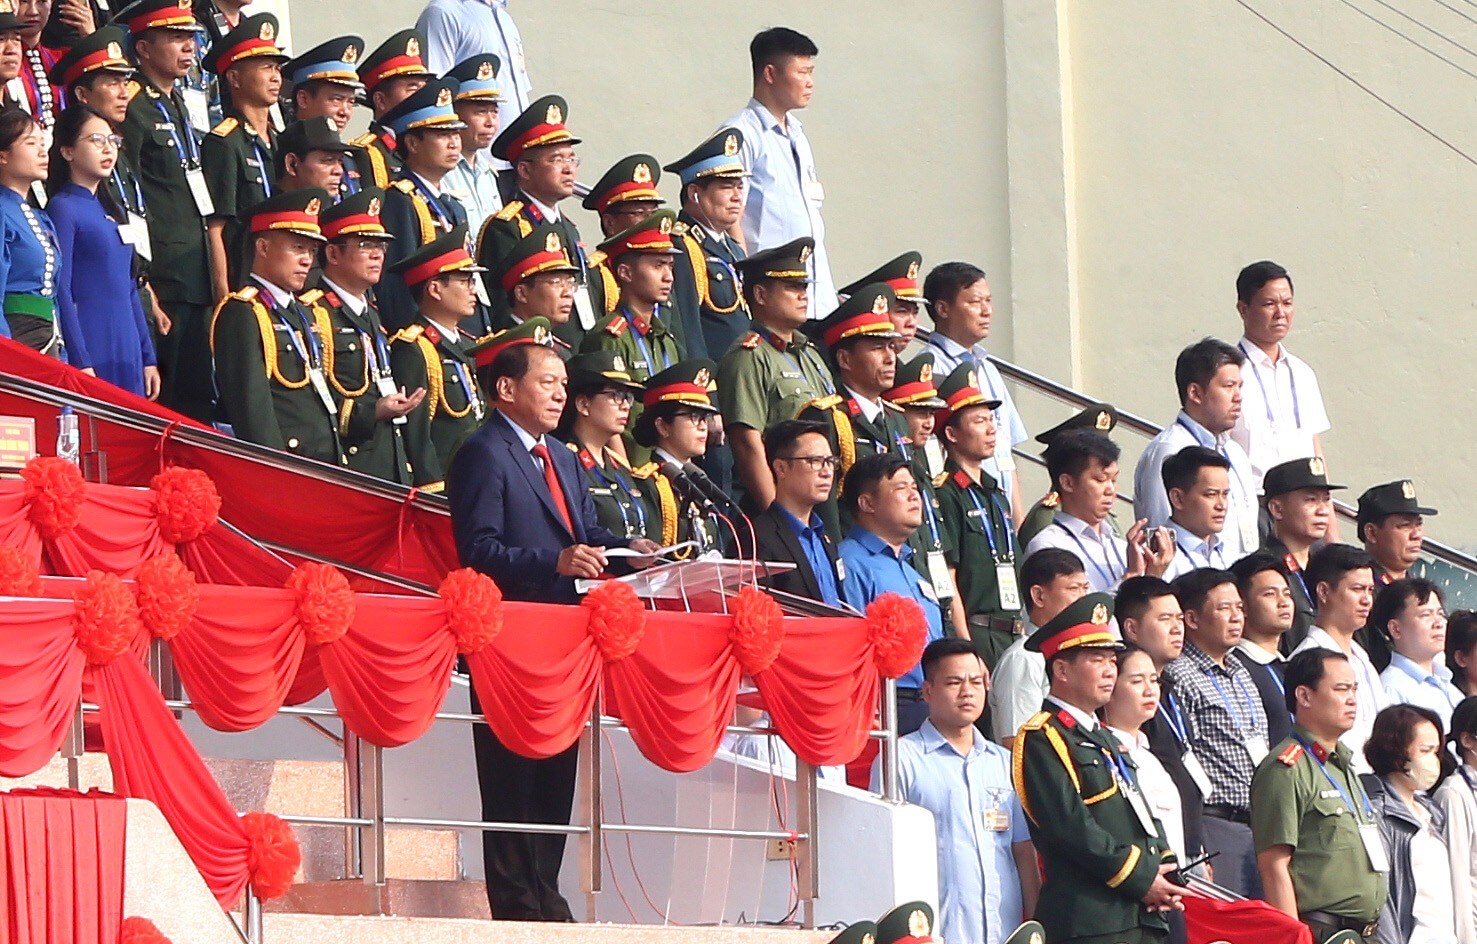 Tổng duyệt diễu binh, diễu hành kỷ niệm 70 năm Chiến thắng Điện Biên Phủ - ảnh 2